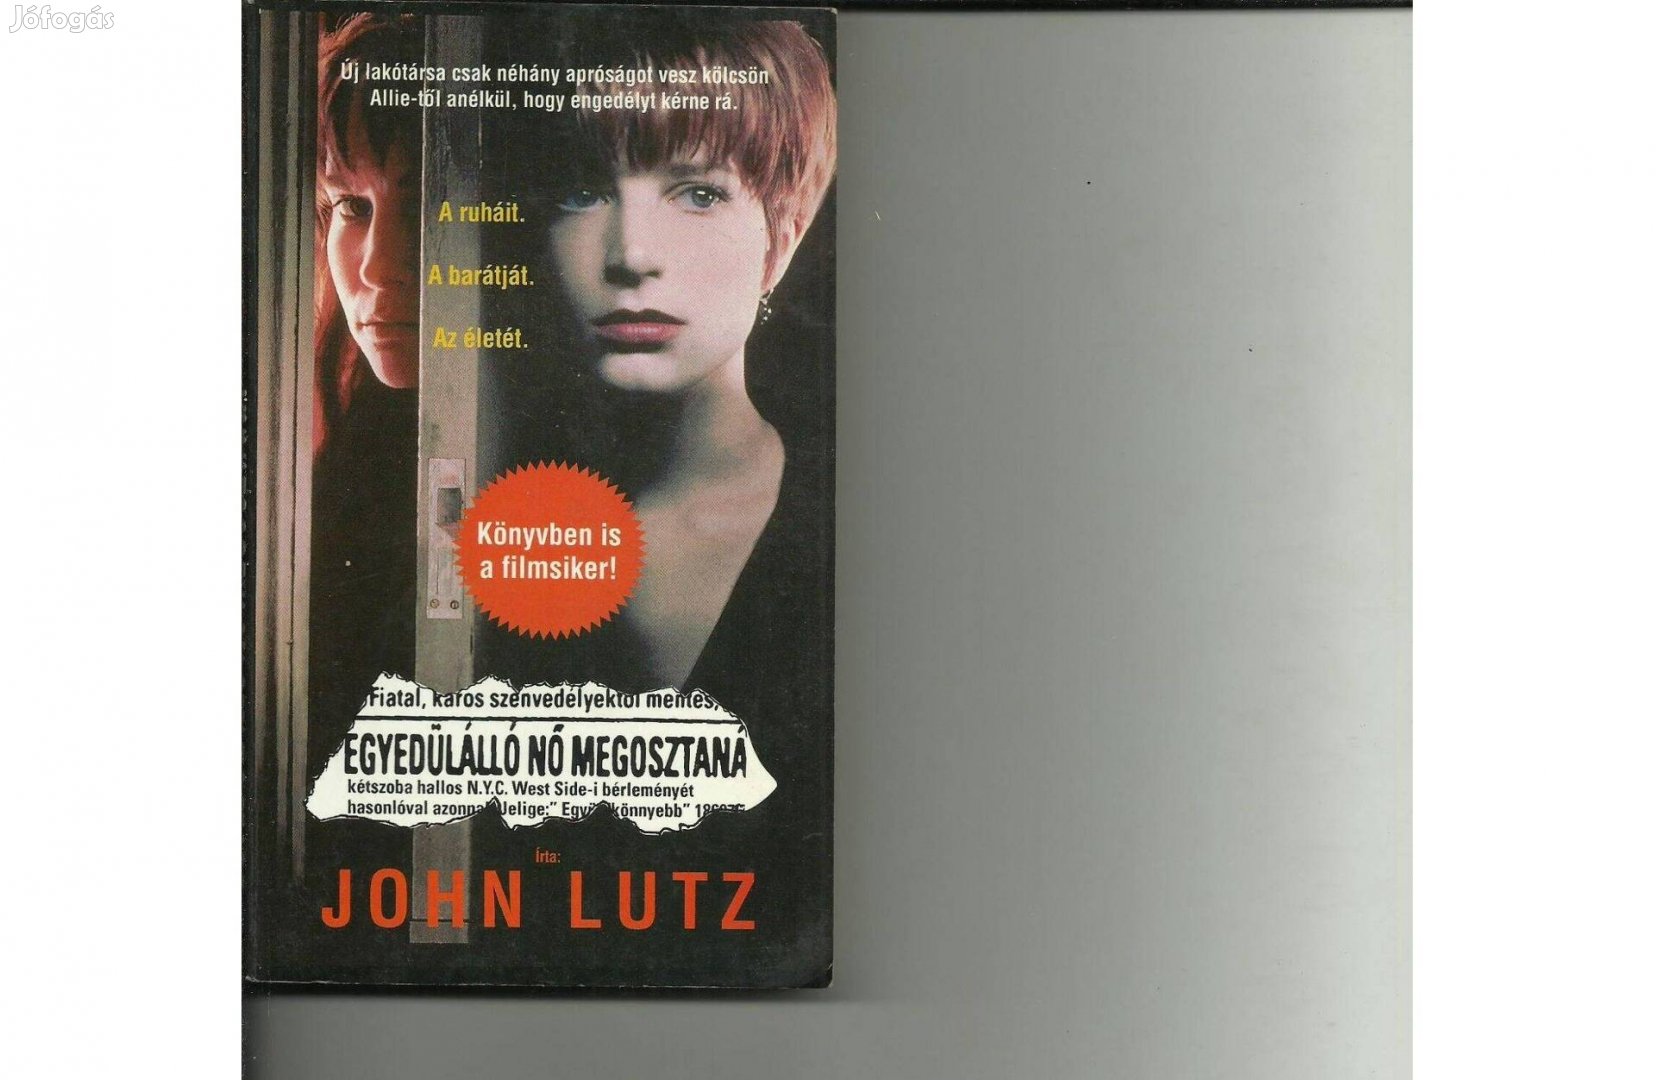 John Lutz: Egyedülálló nő megosztaná című könyv eladó